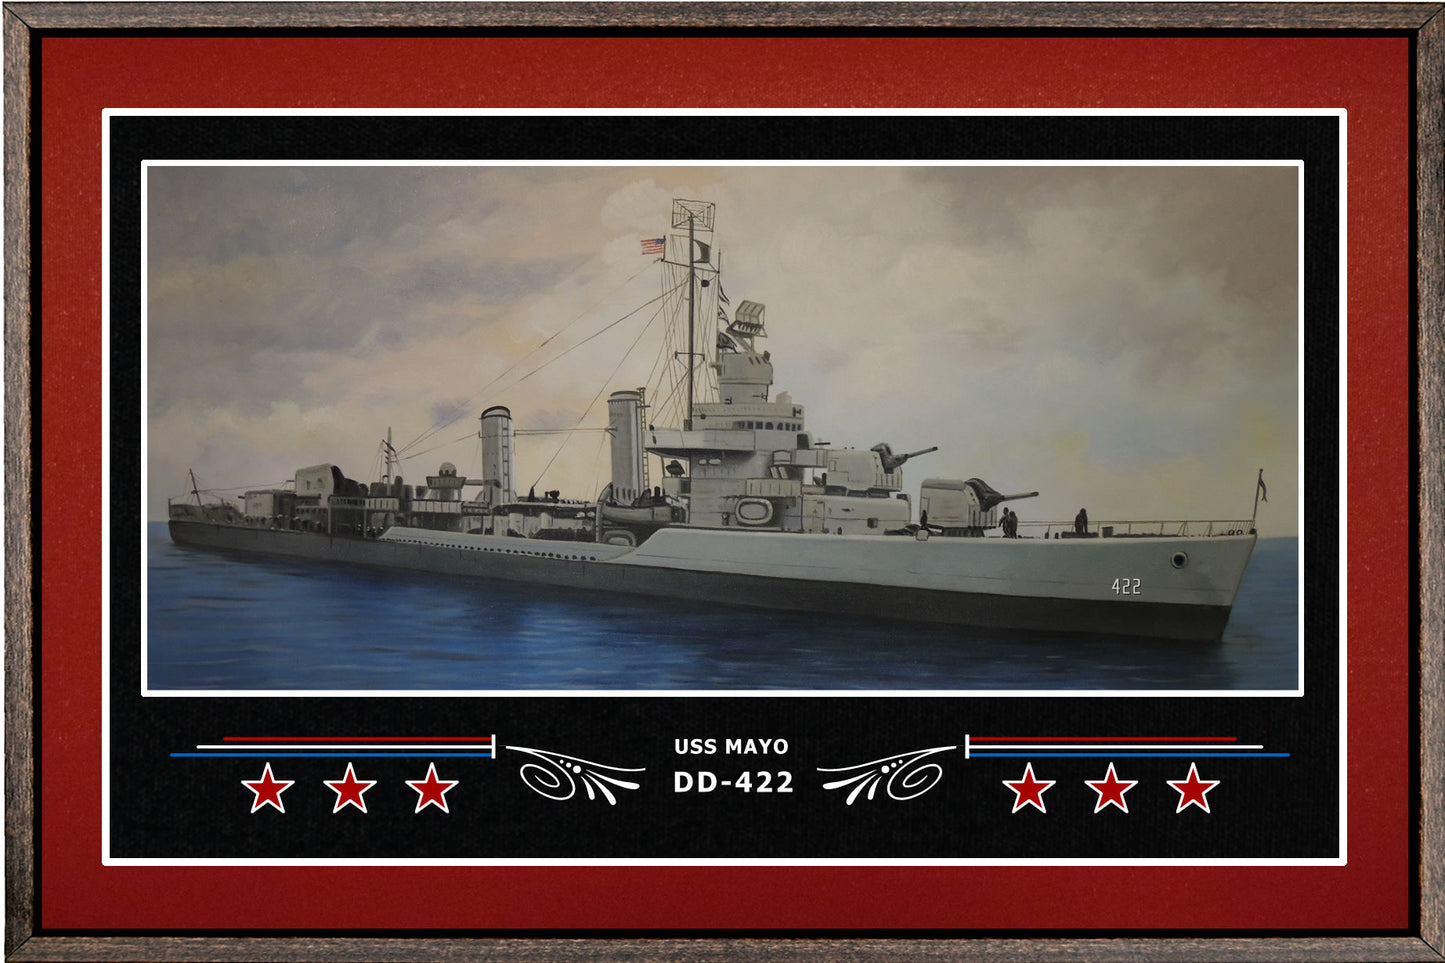 USS MAYO DD 422 BOX FRAMED CANVAS ART BURGUNDY